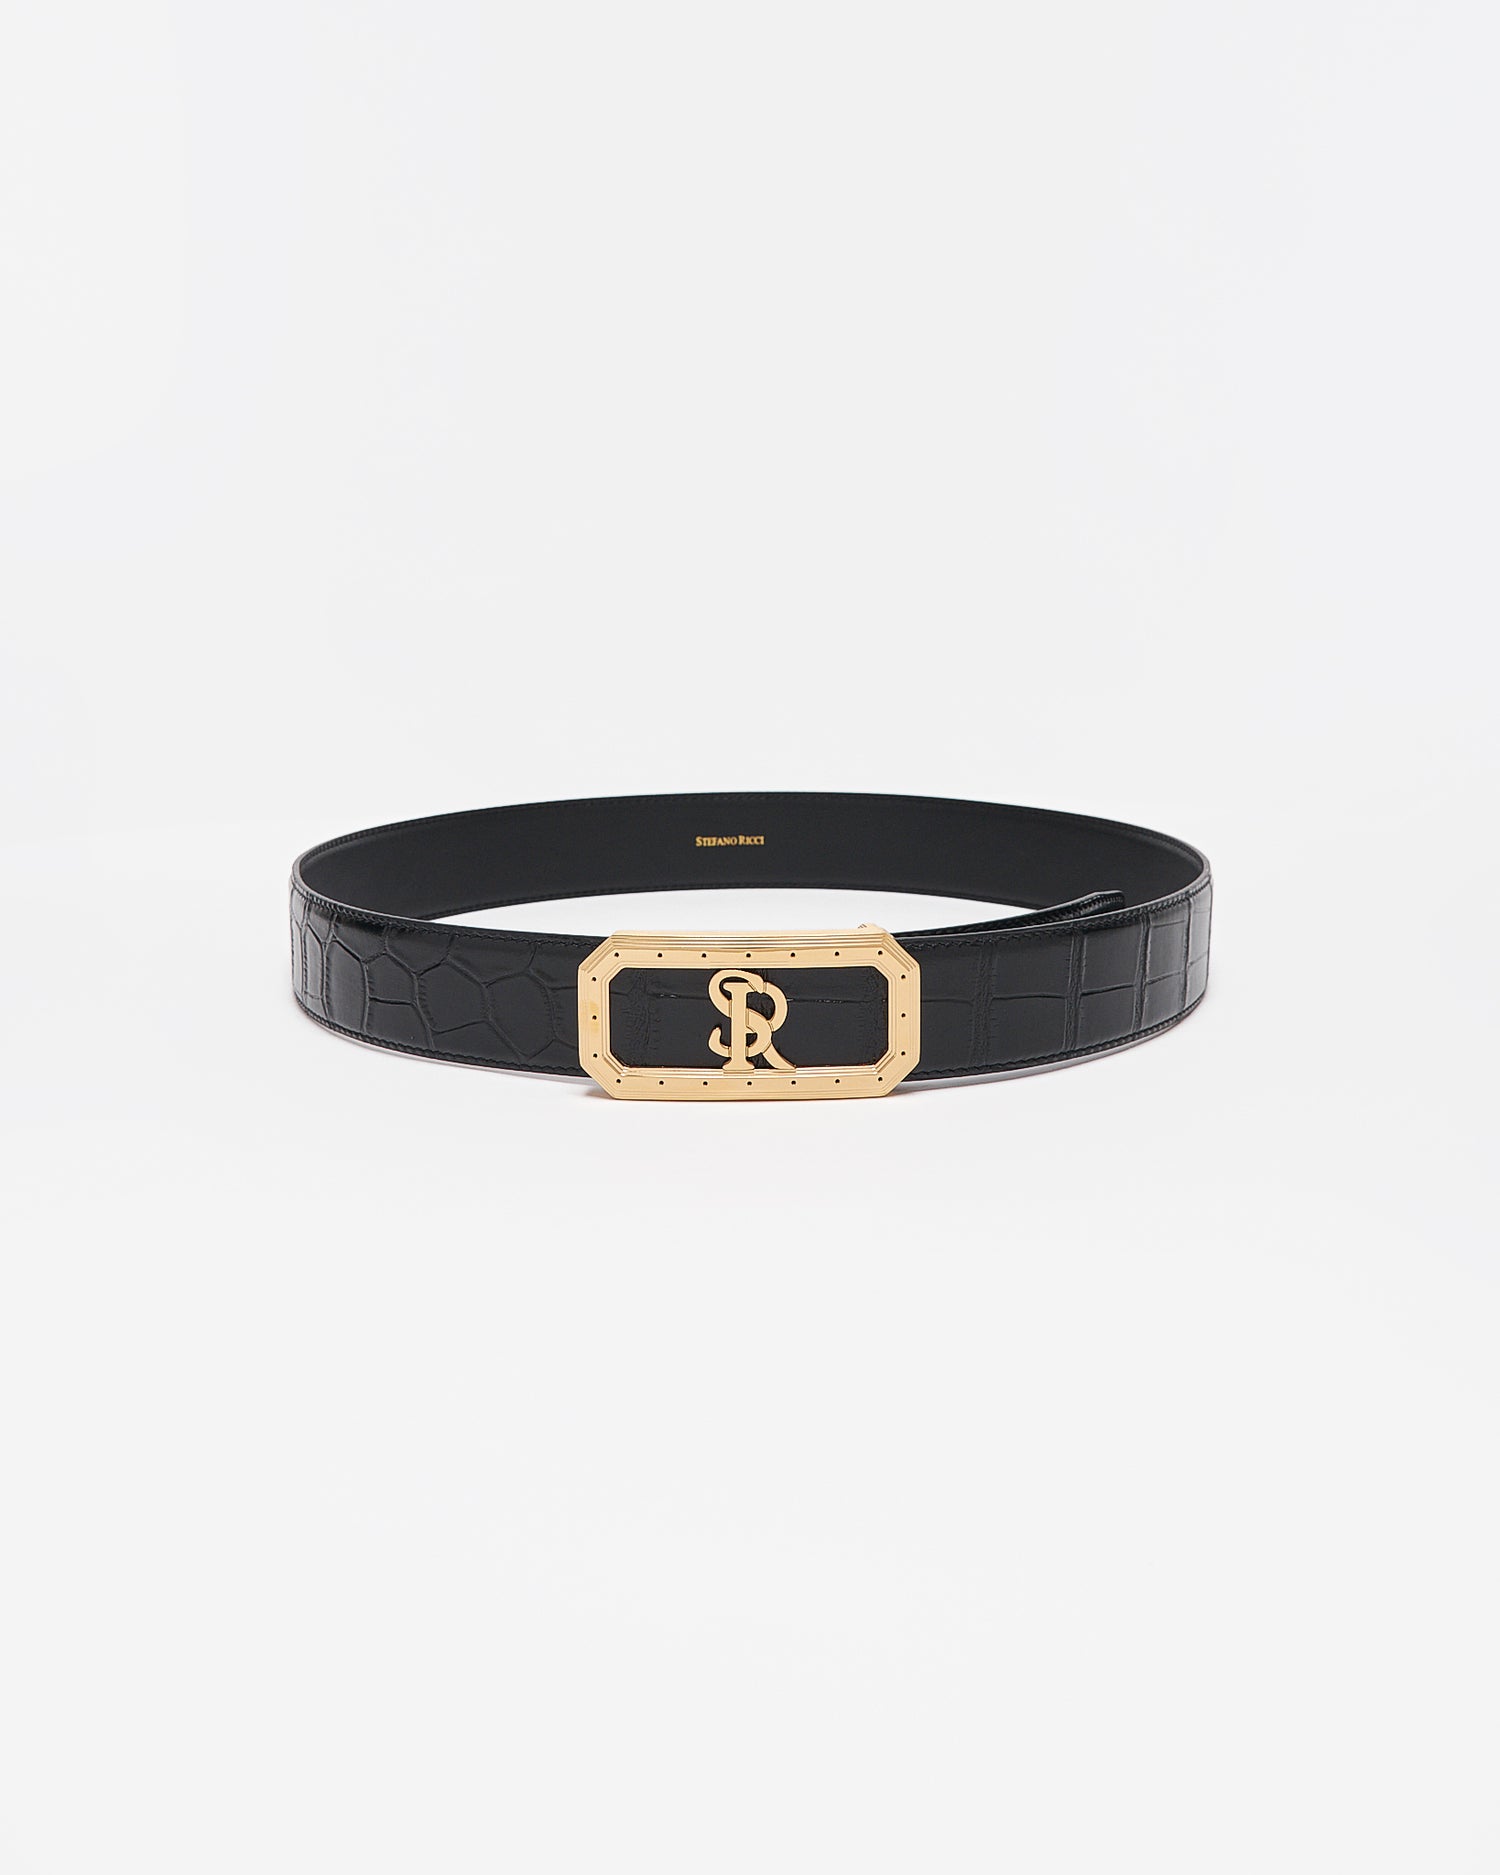 SR Gold Logo Men Black Leather Belt 95.90